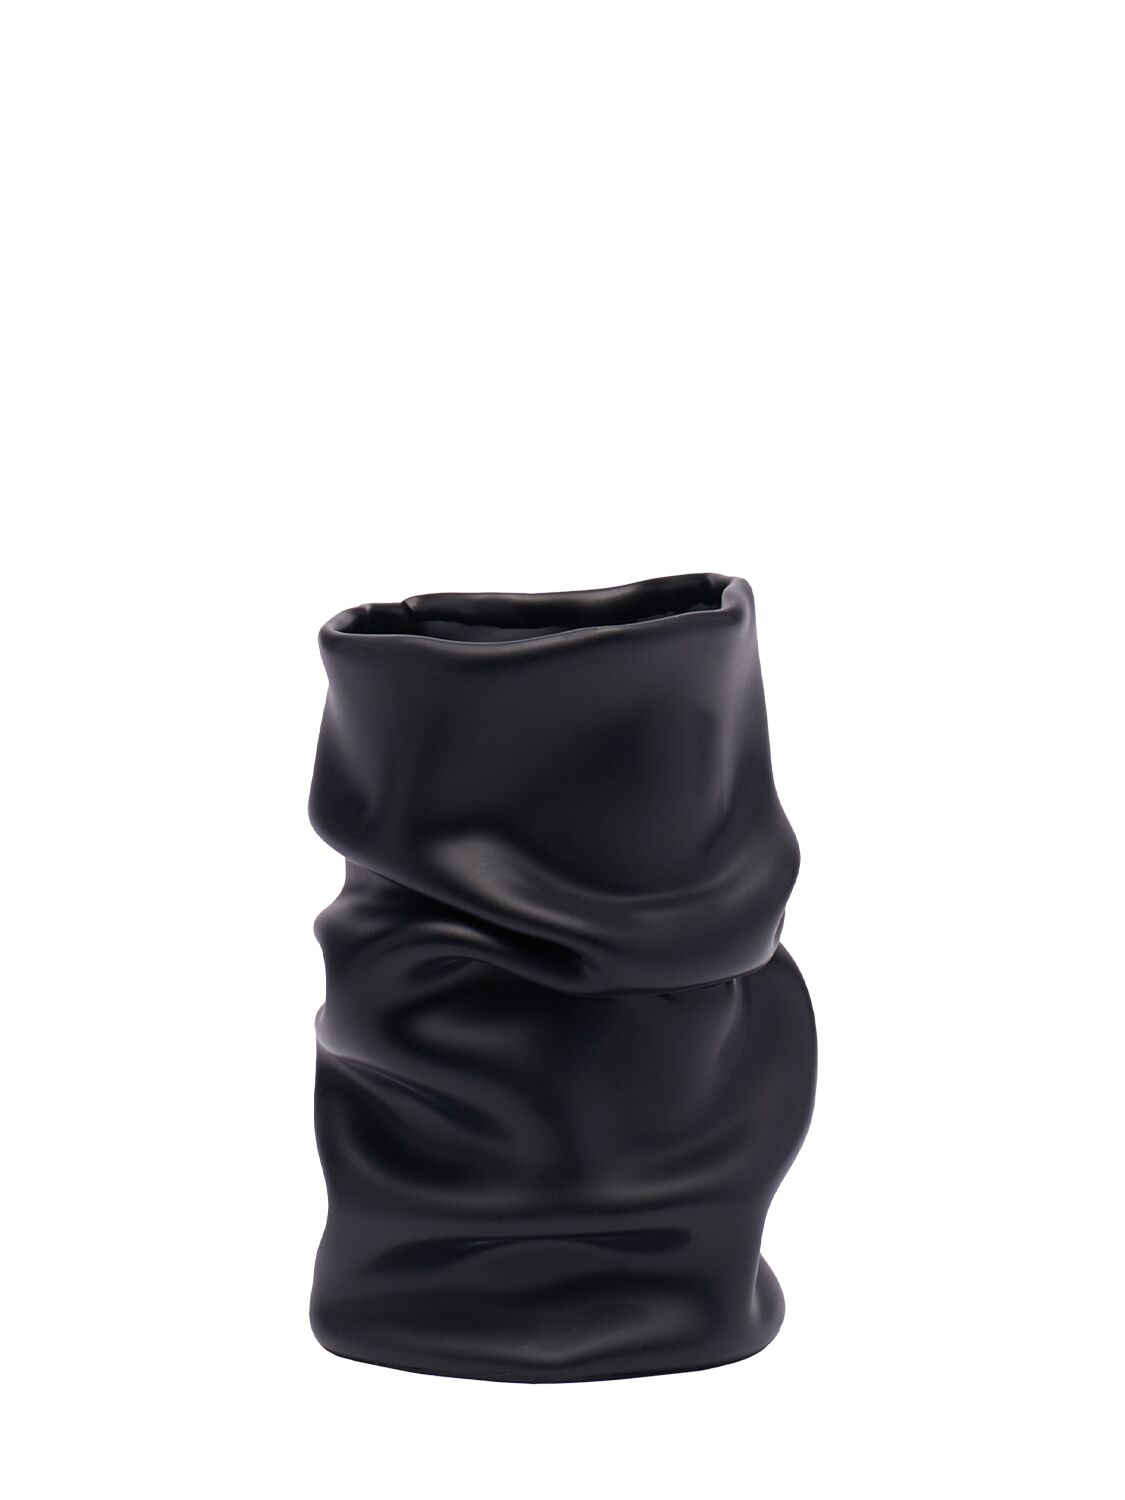 Studio X Mini Venere Vase In Black